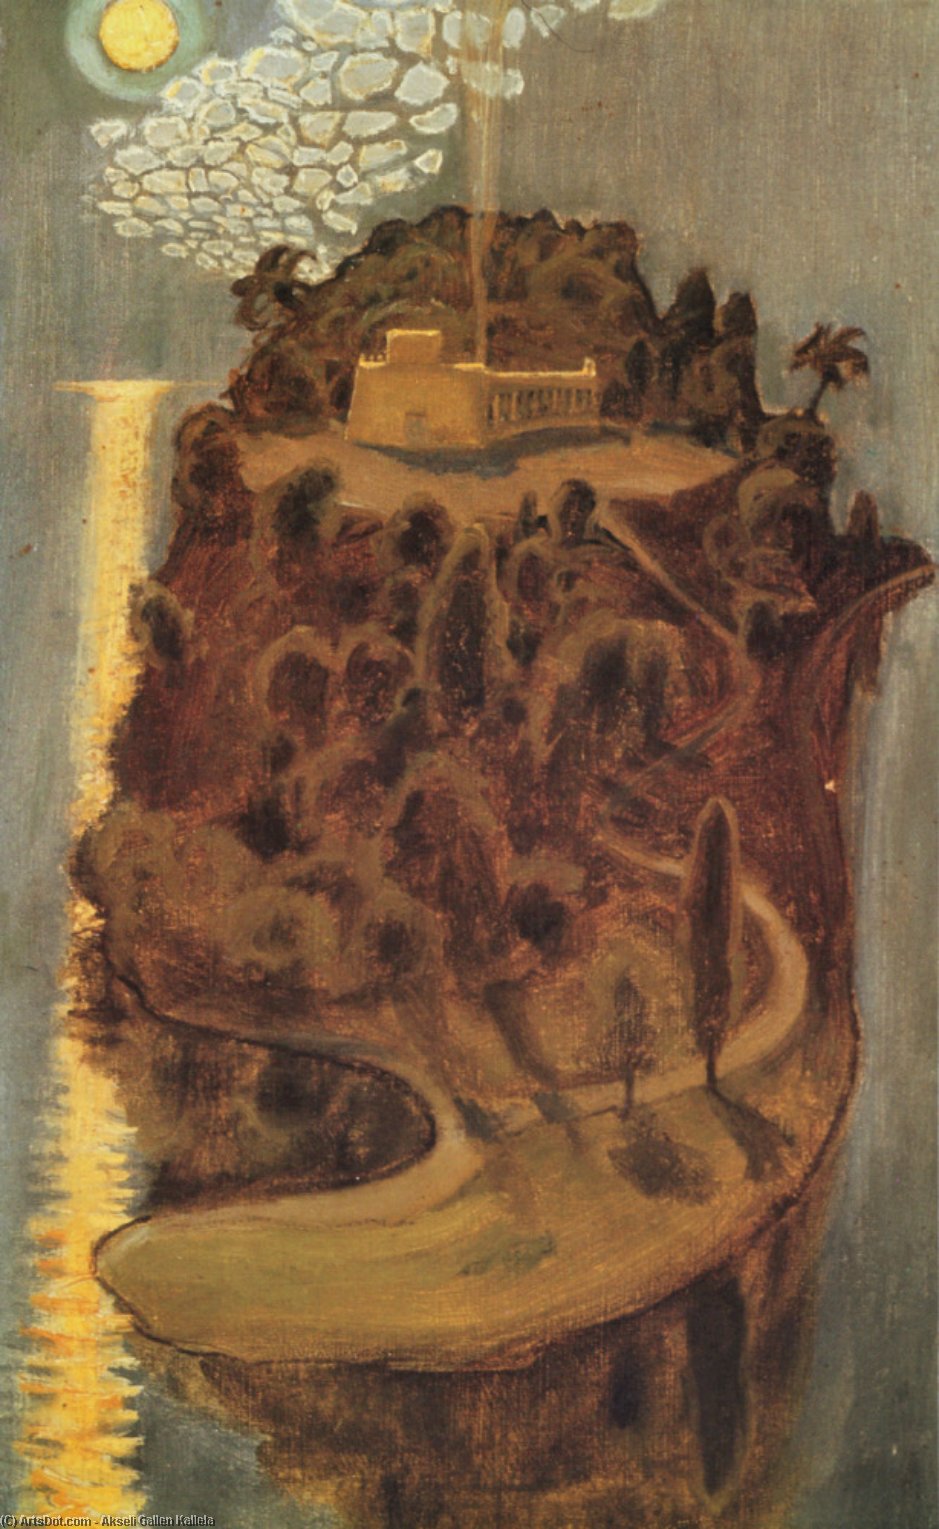 WikiOO.org - Encyclopedia of Fine Arts - Festés, Grafika Akseli Gallen Kallela - Island of dreams